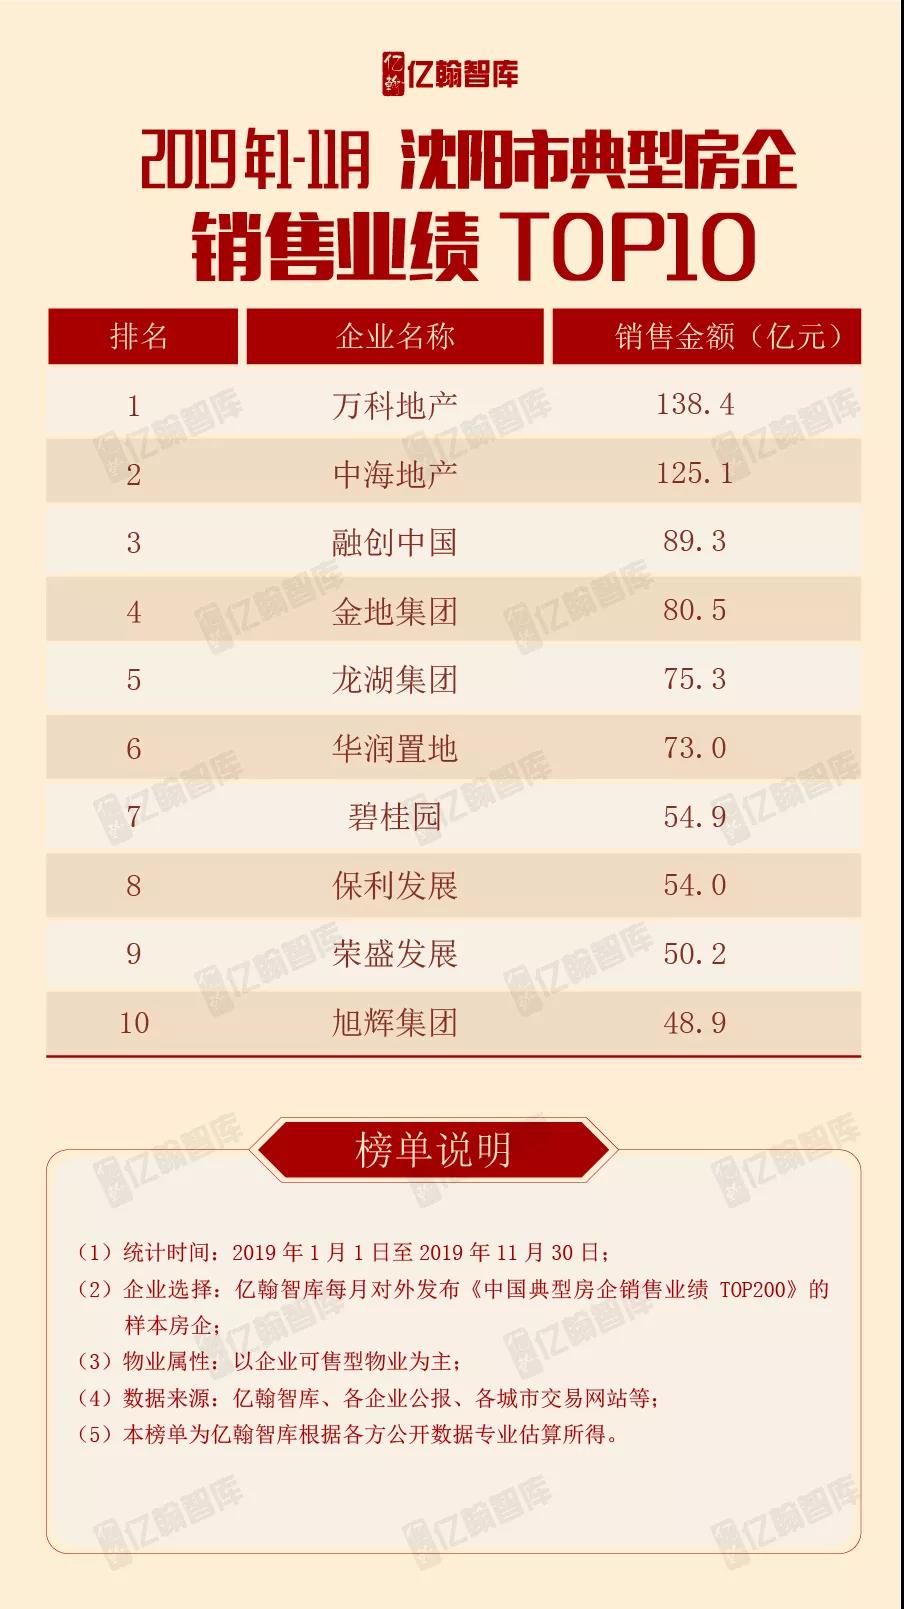 重磅 | 2019年1-11月沈阳市典型房企 销售业绩TOP10【第5期】-中国网地产